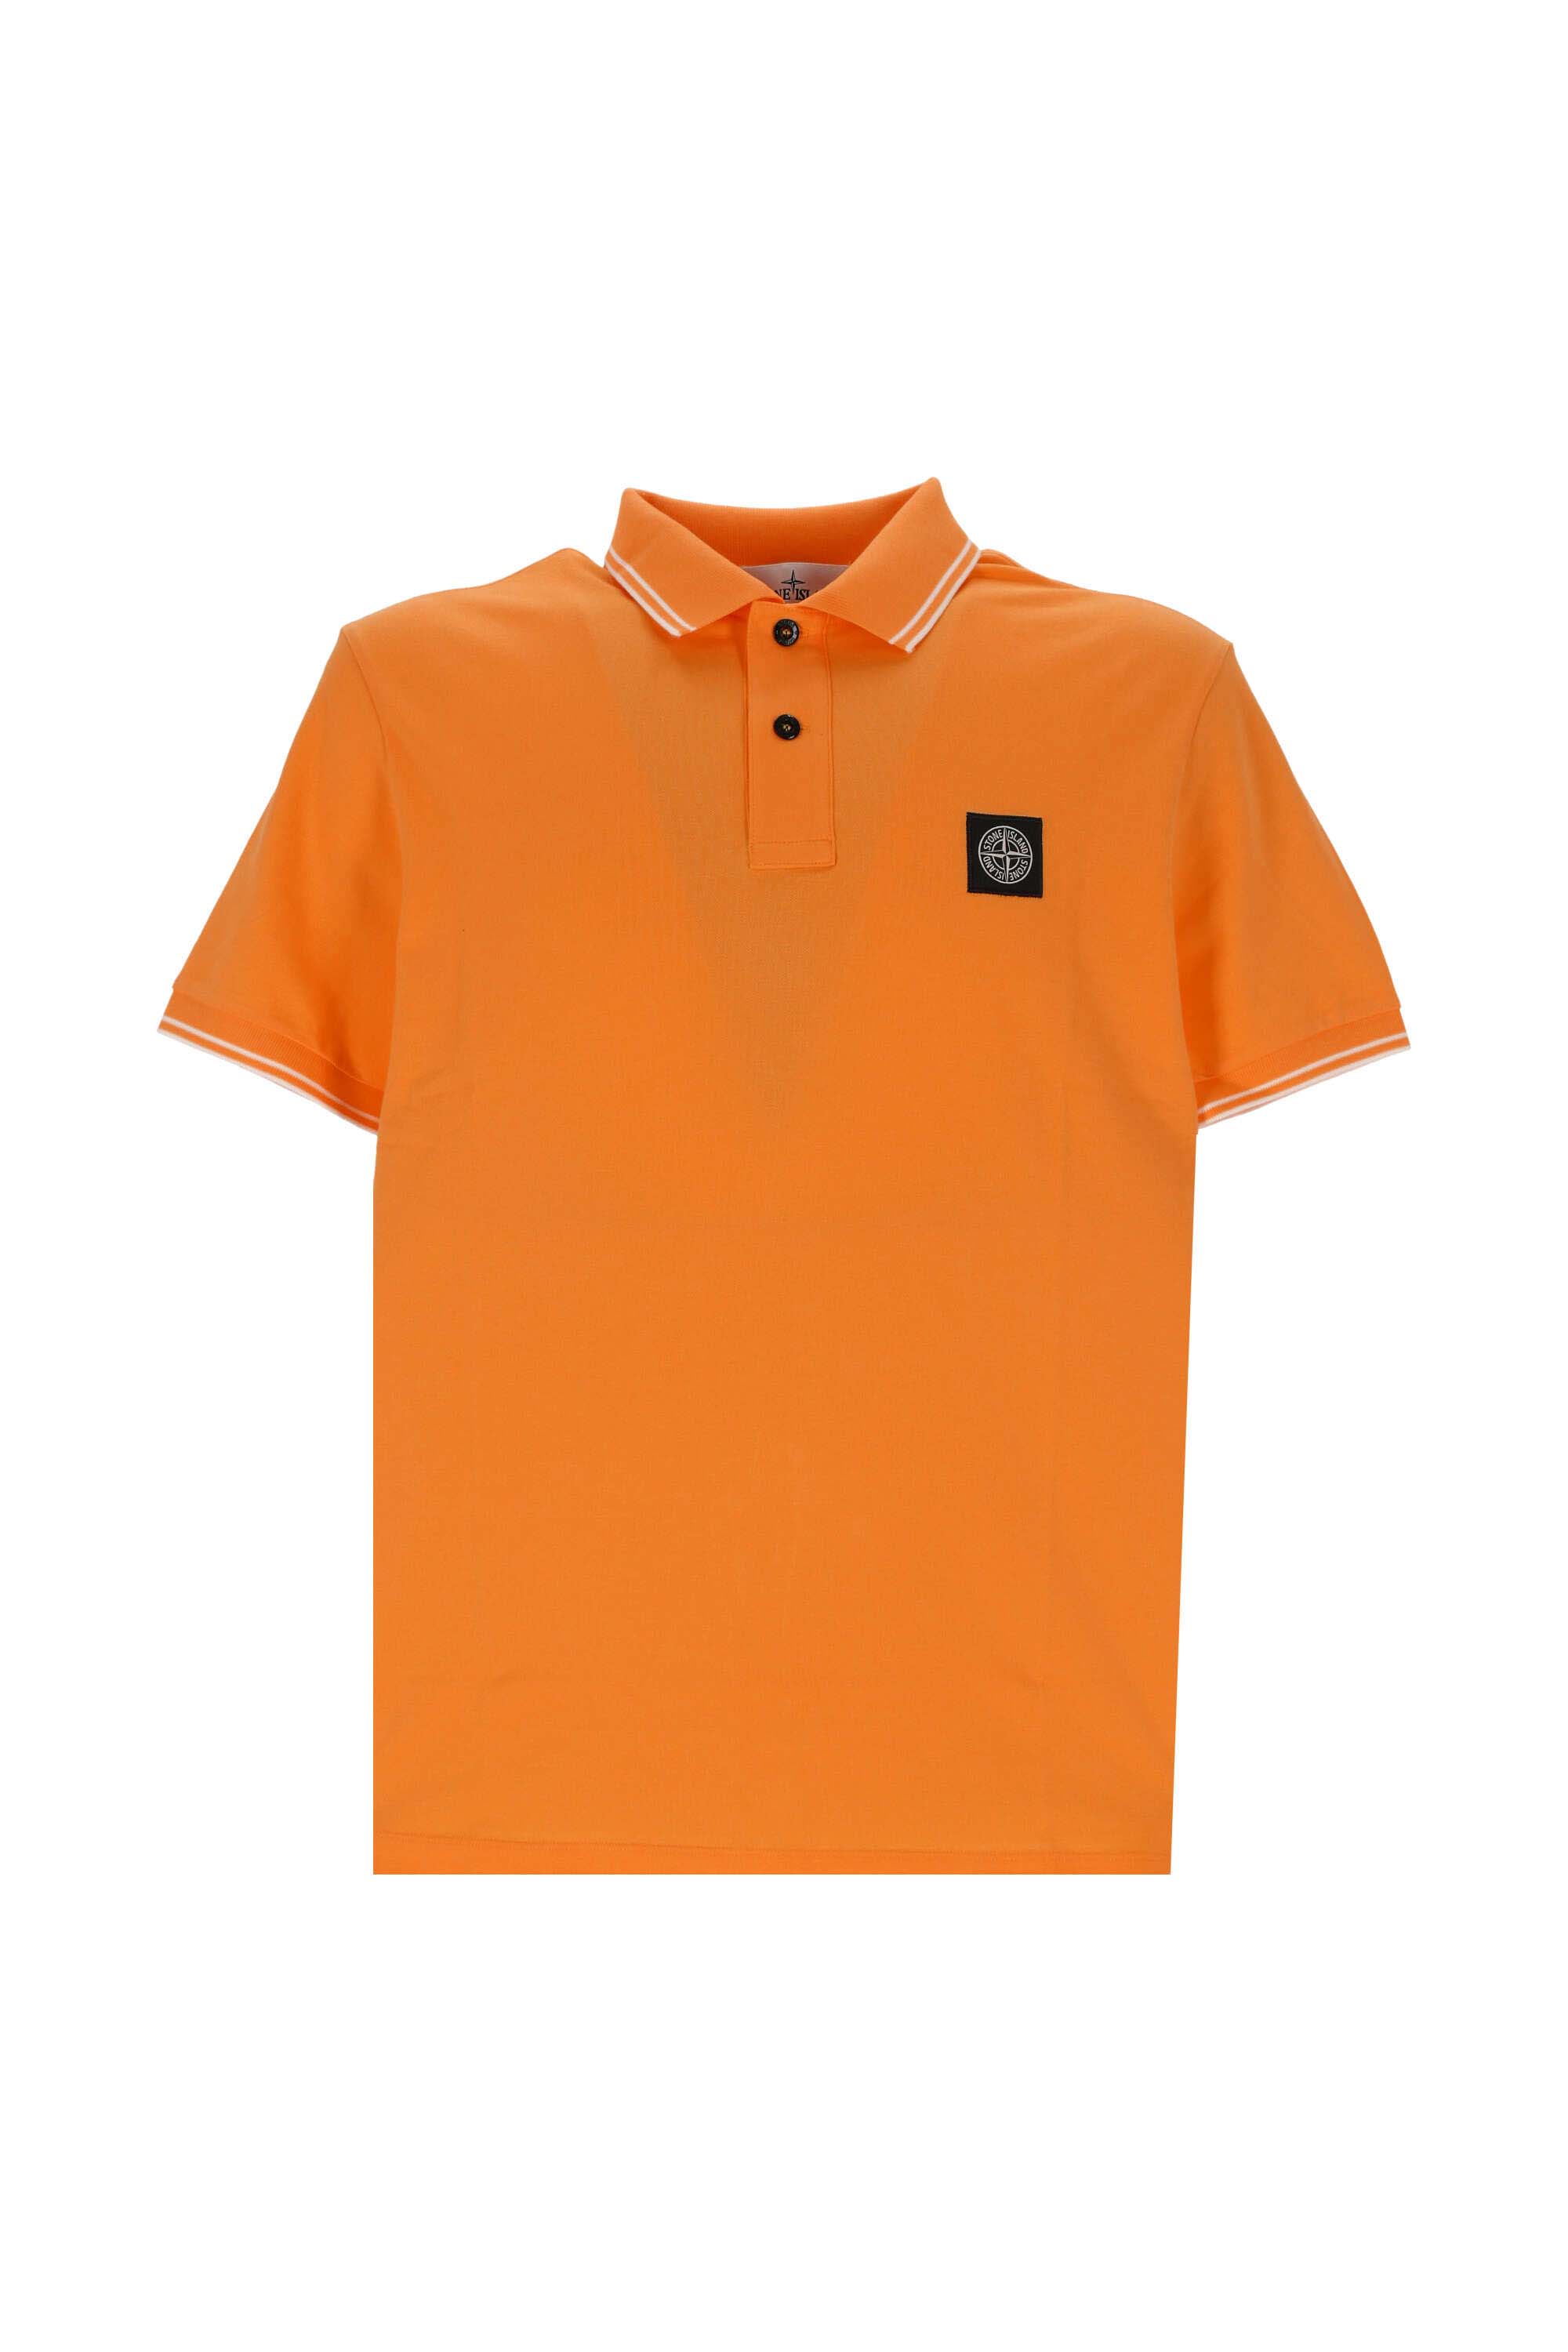 Stone Island Logo Poloshirt Orange